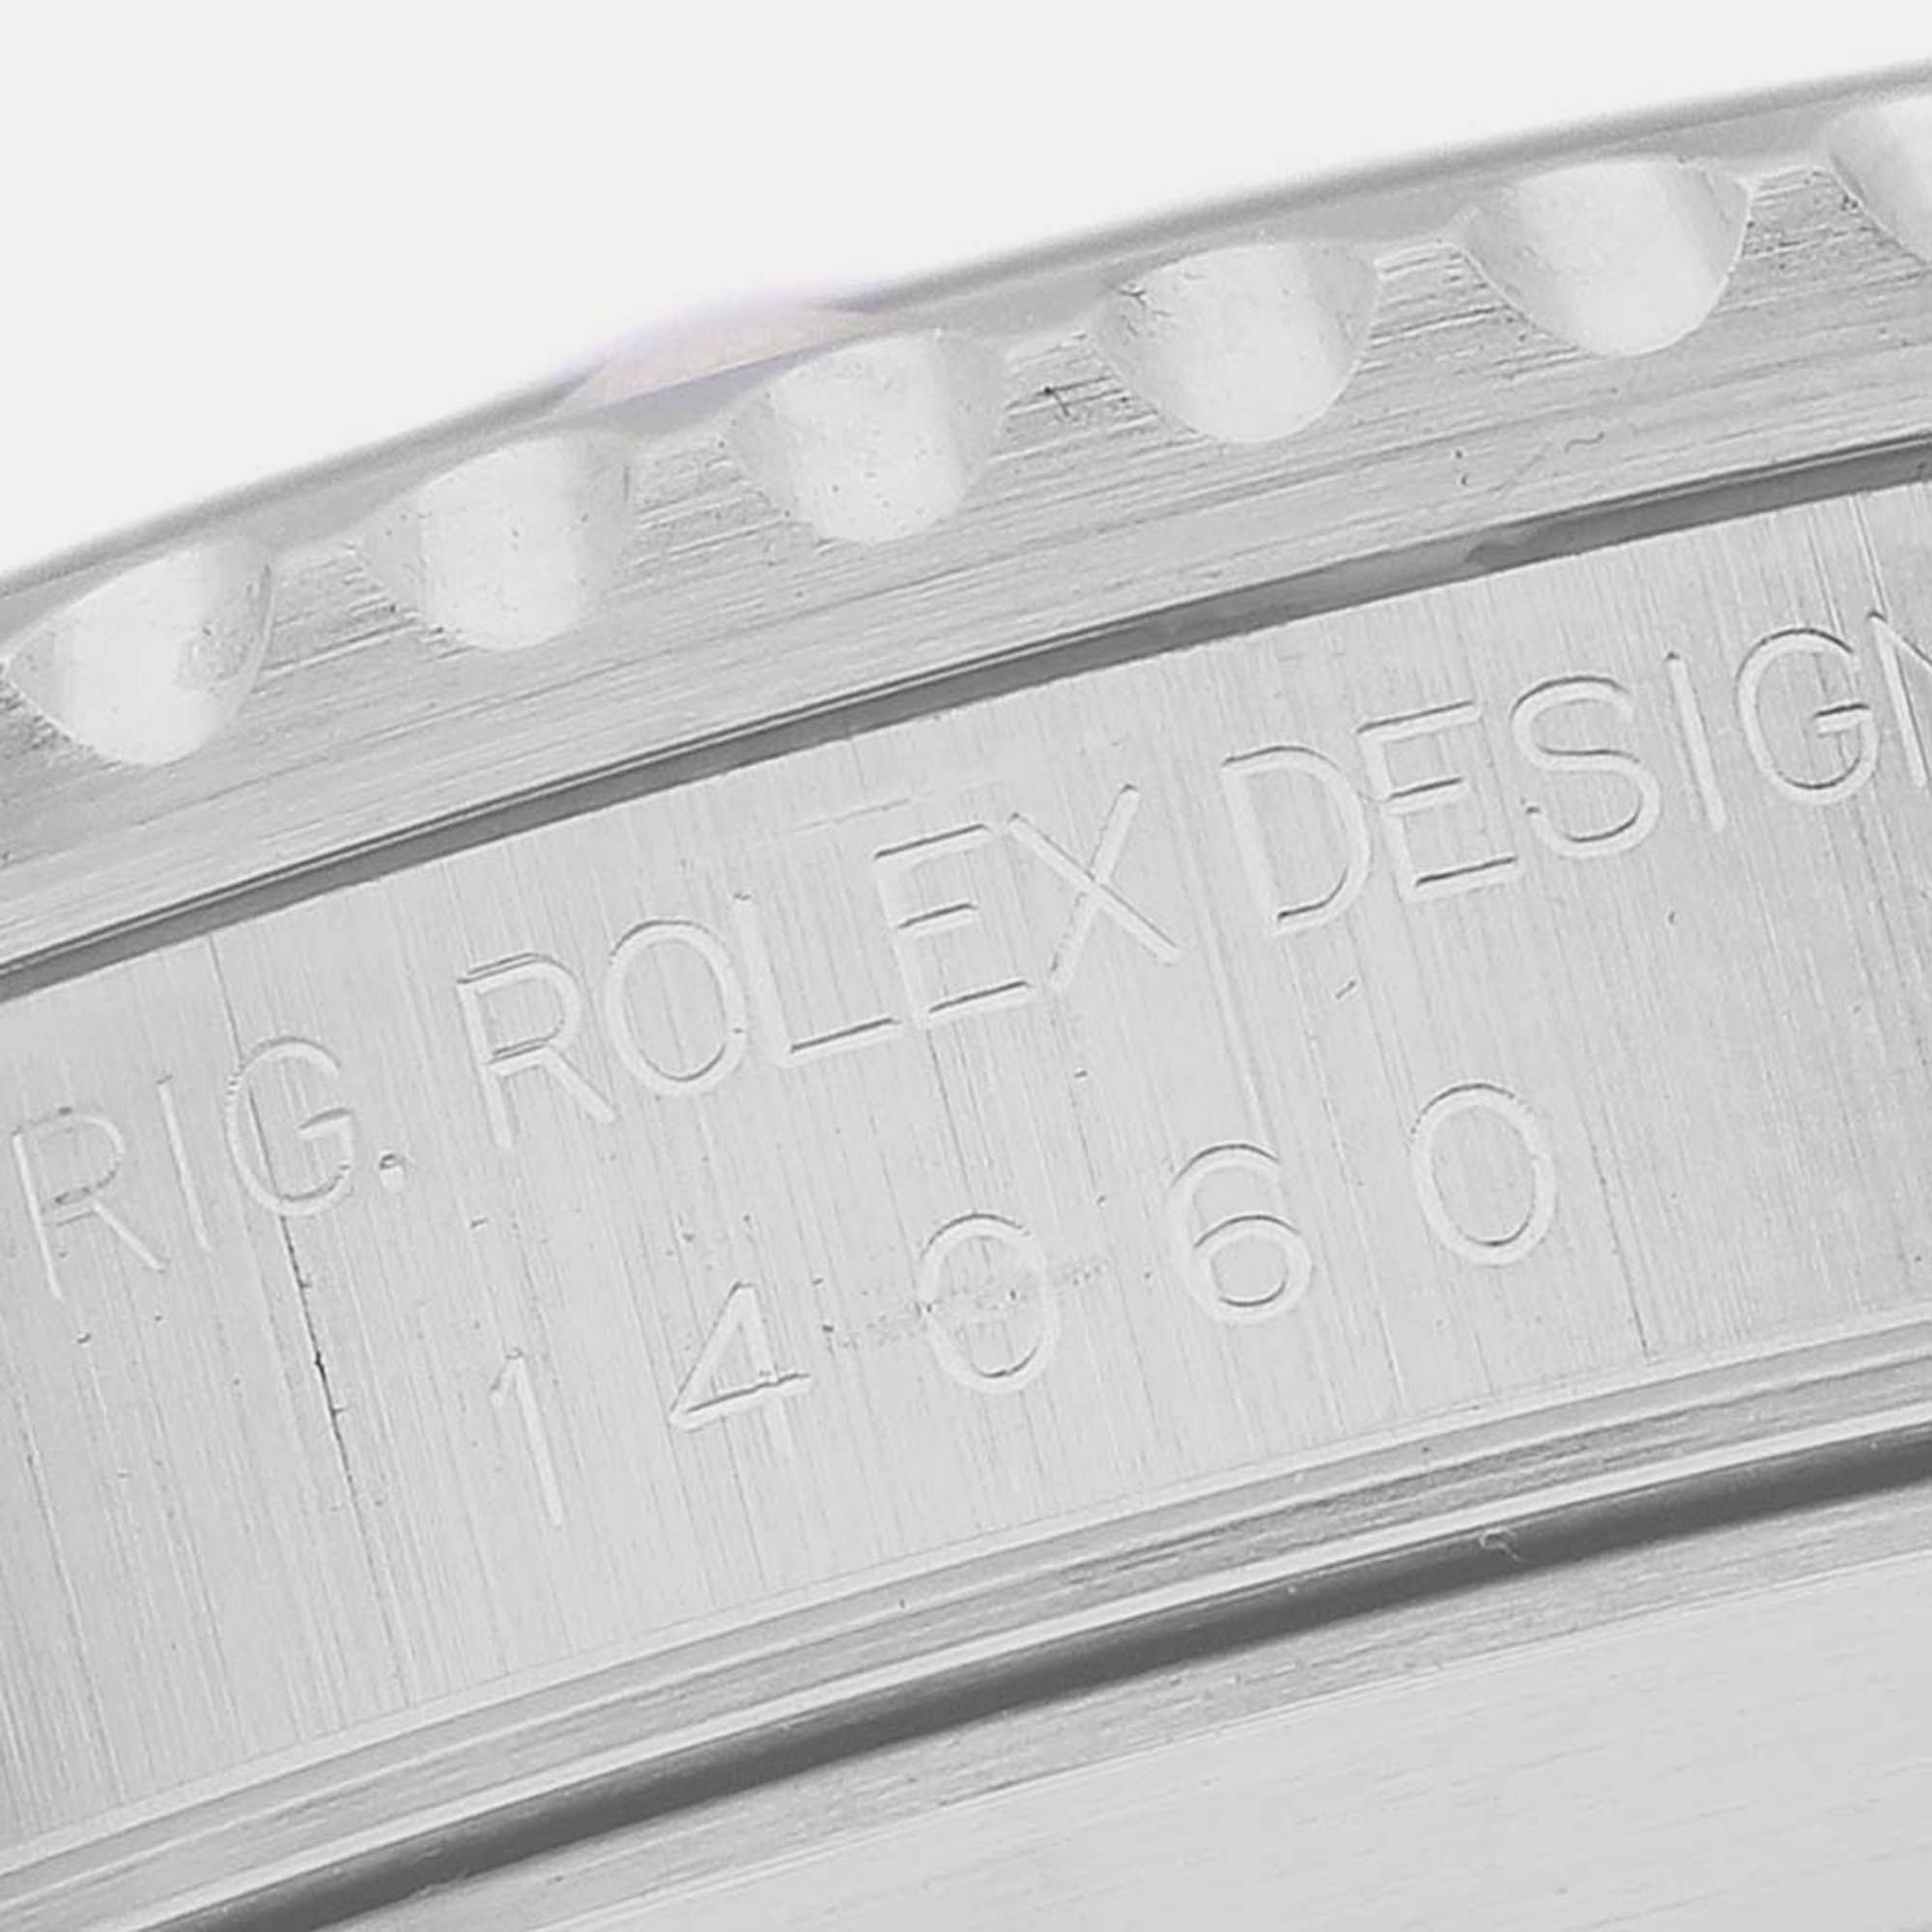 Rolex Submariner No Date 40mm 2 Liner Steel Mens Watch 14060